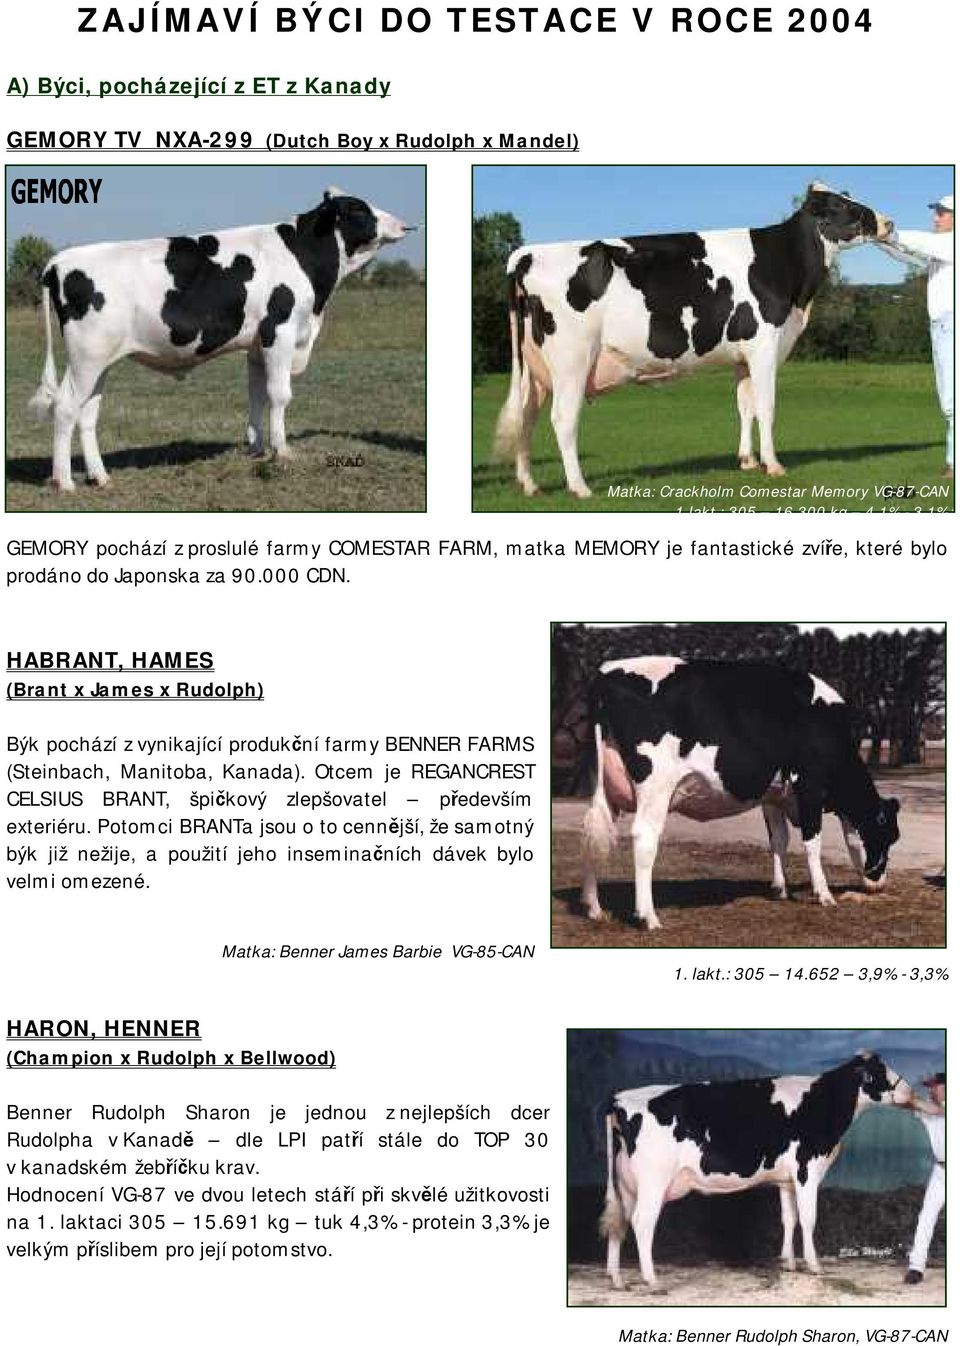 HABRANT, HAMES (Brant x James x Rudolph) Býk pochází z vynikající produkční farmy BENNER FARMS (Steinbach, Manitoba, Kanada).